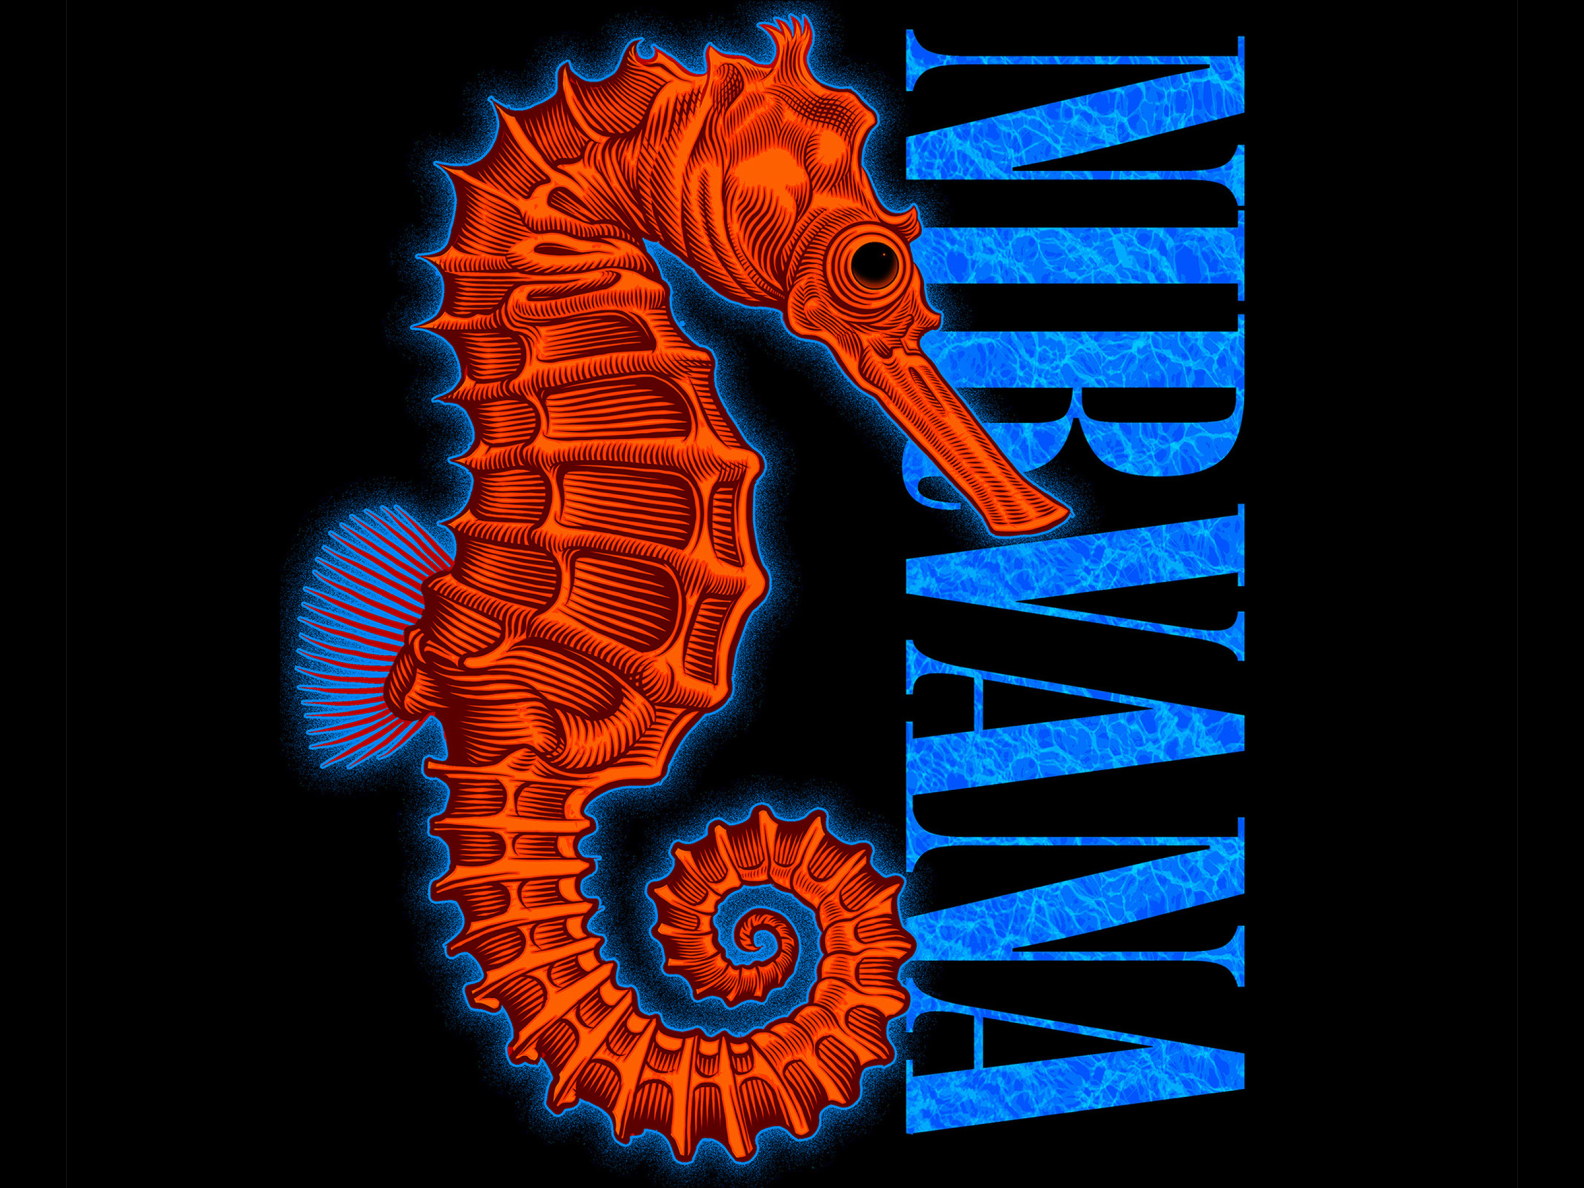 nirvana seahorse t shirt